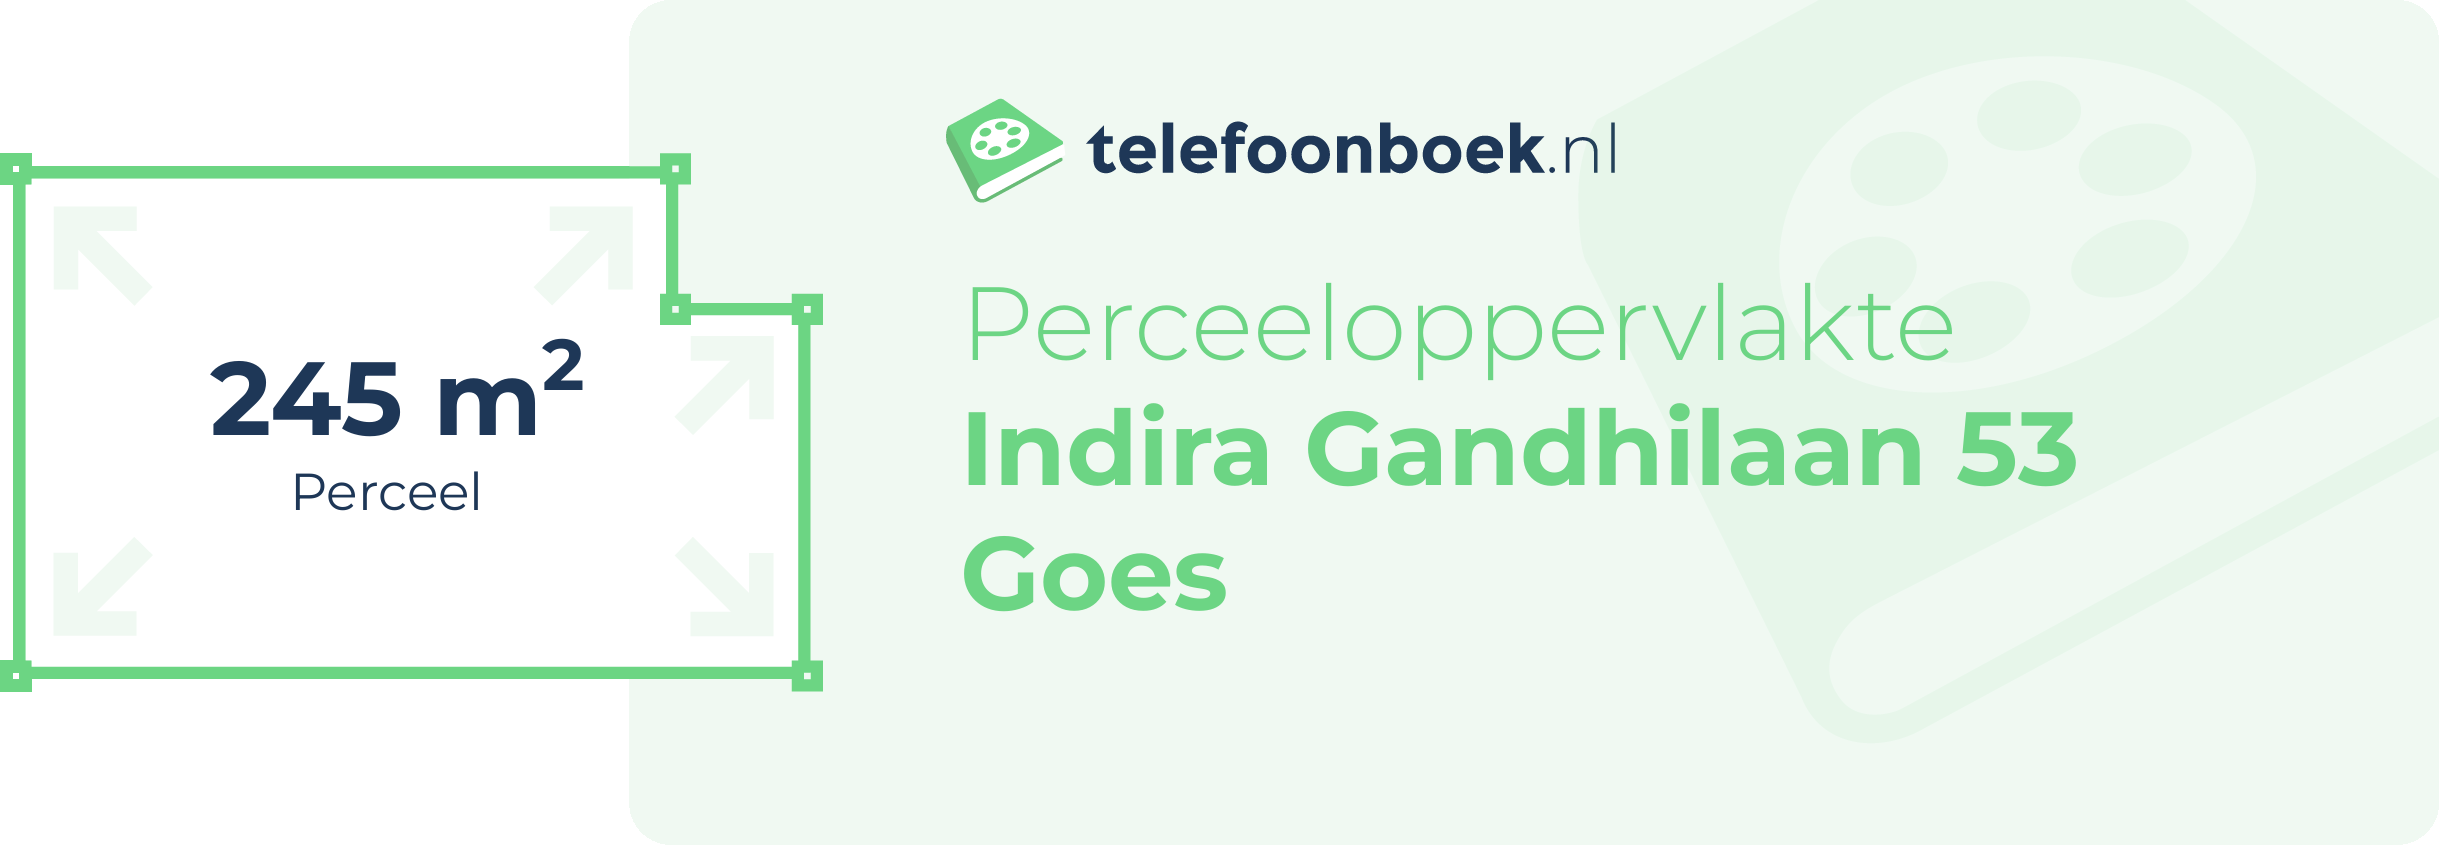 Perceeloppervlakte Indira Gandhilaan 53 Goes